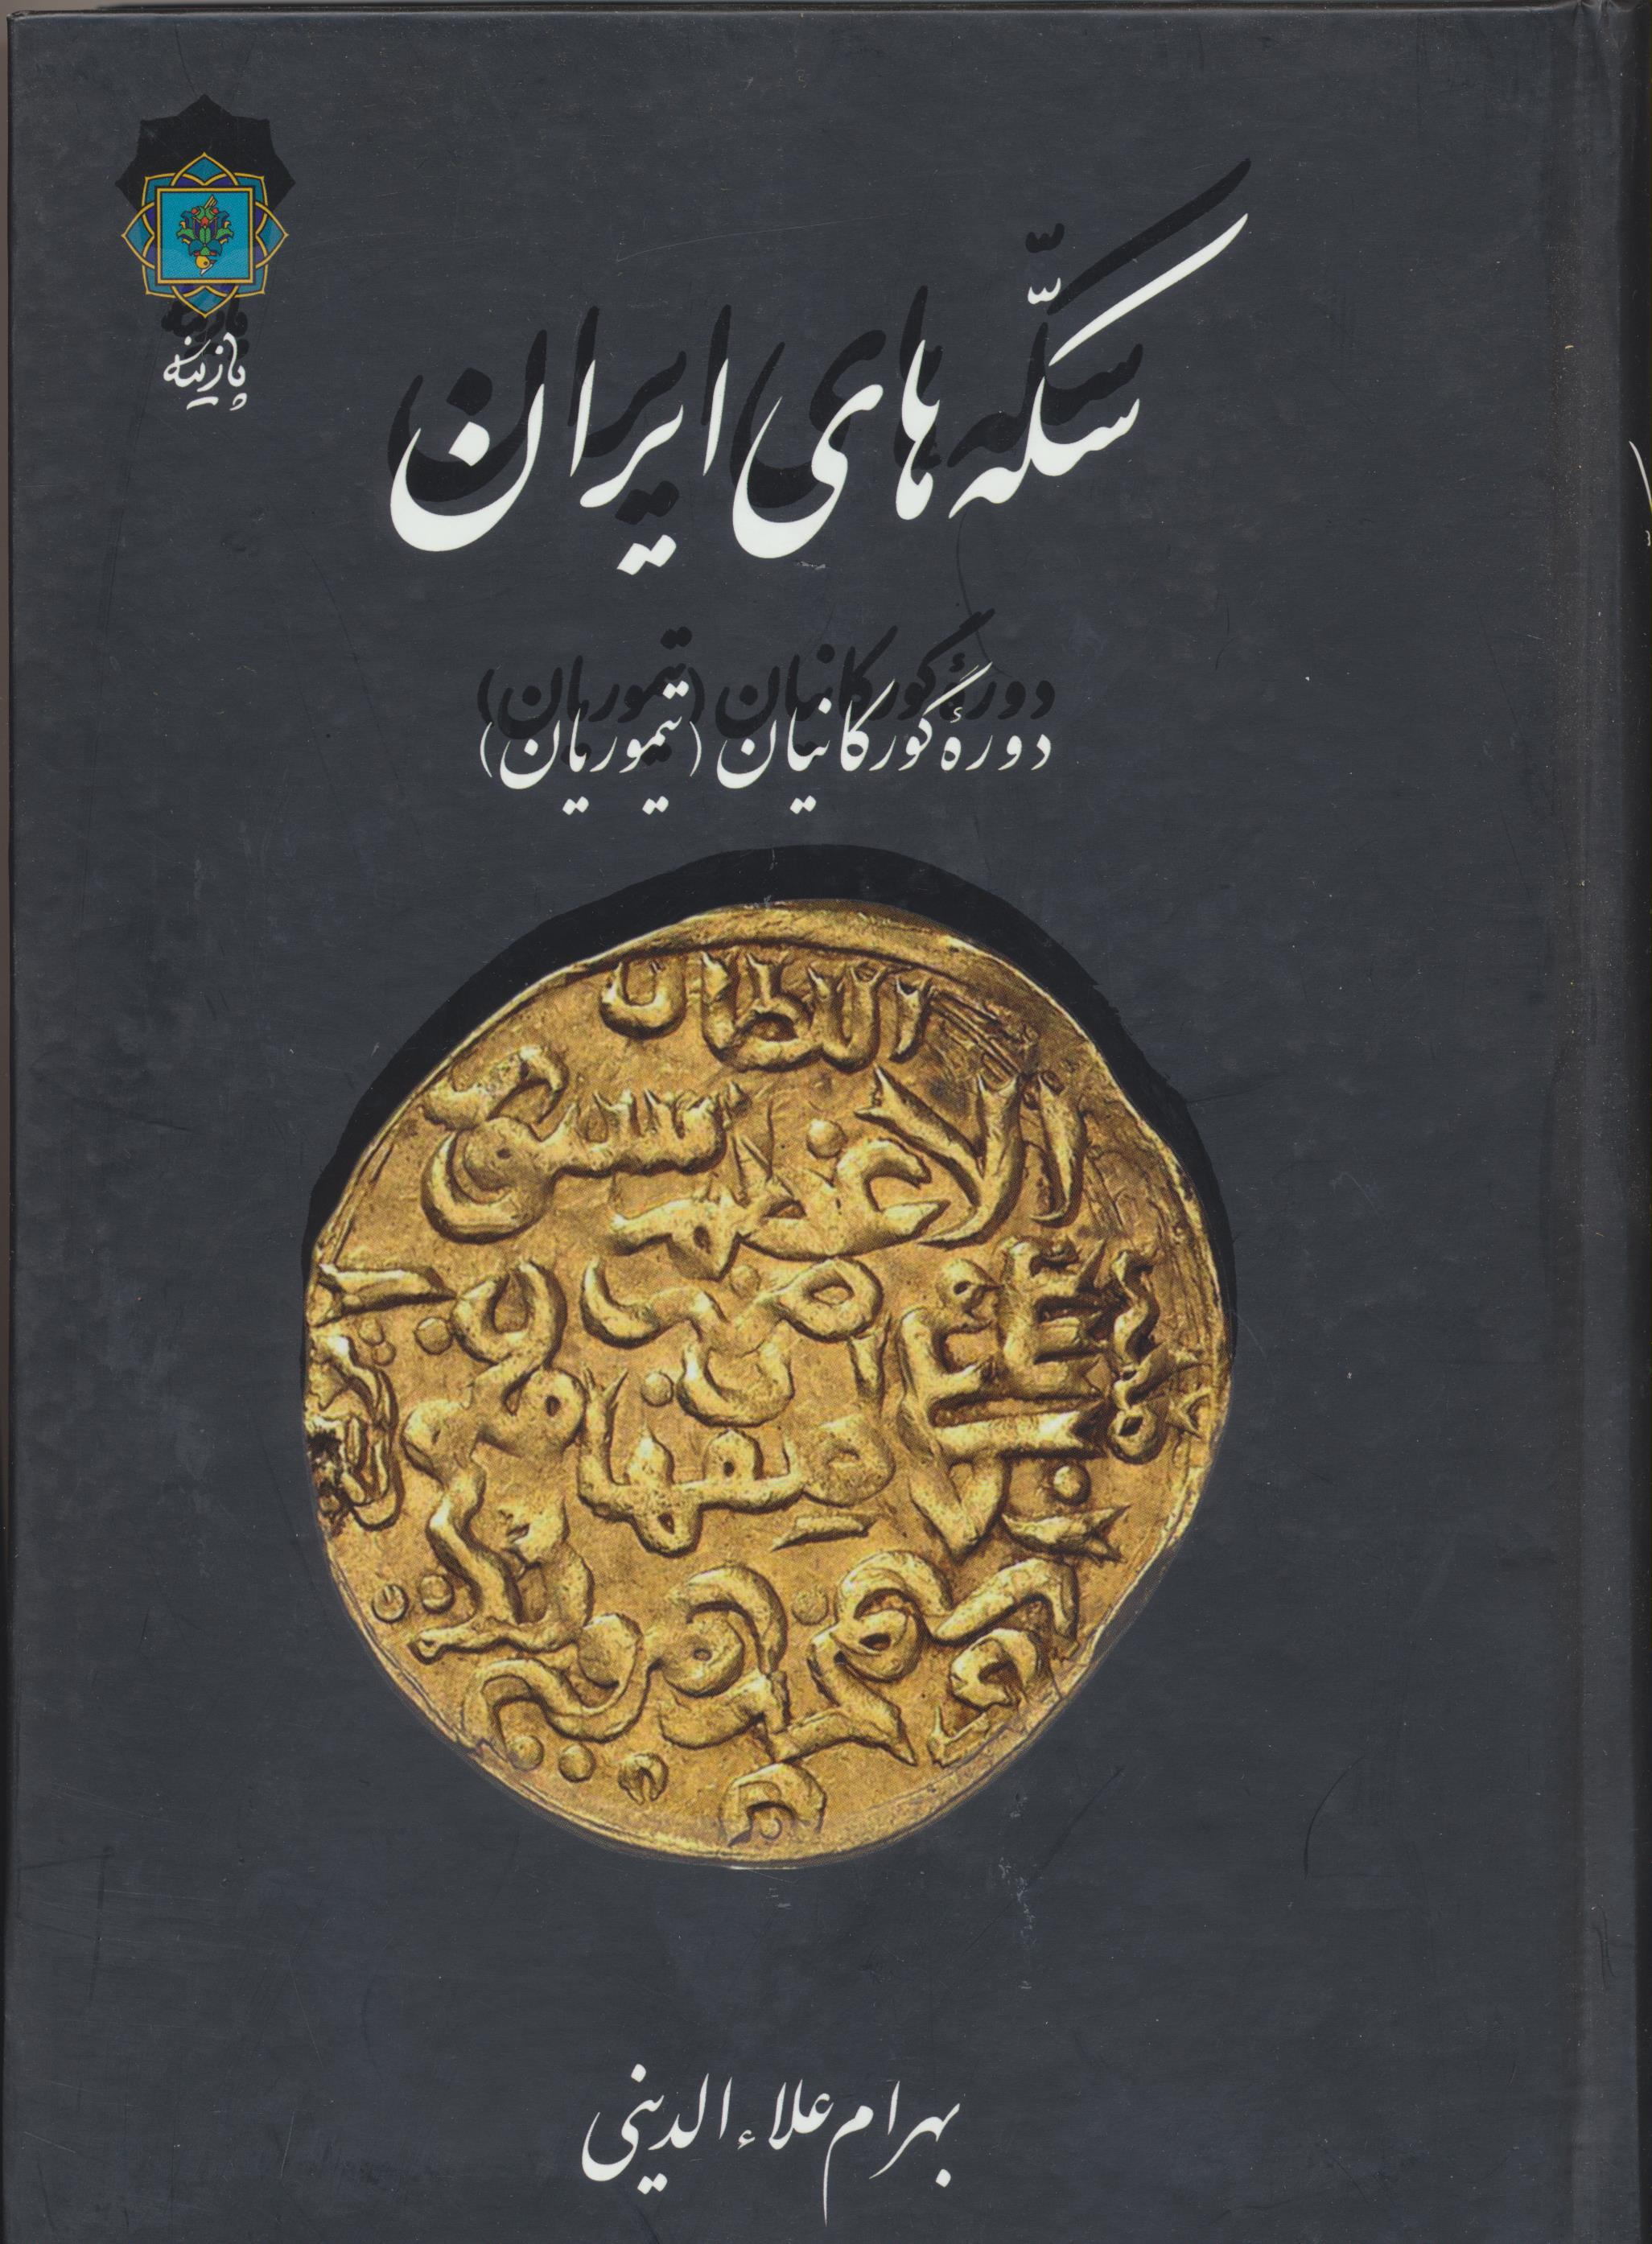 سکه های ایران دوره گورکانیان(تیموریان)